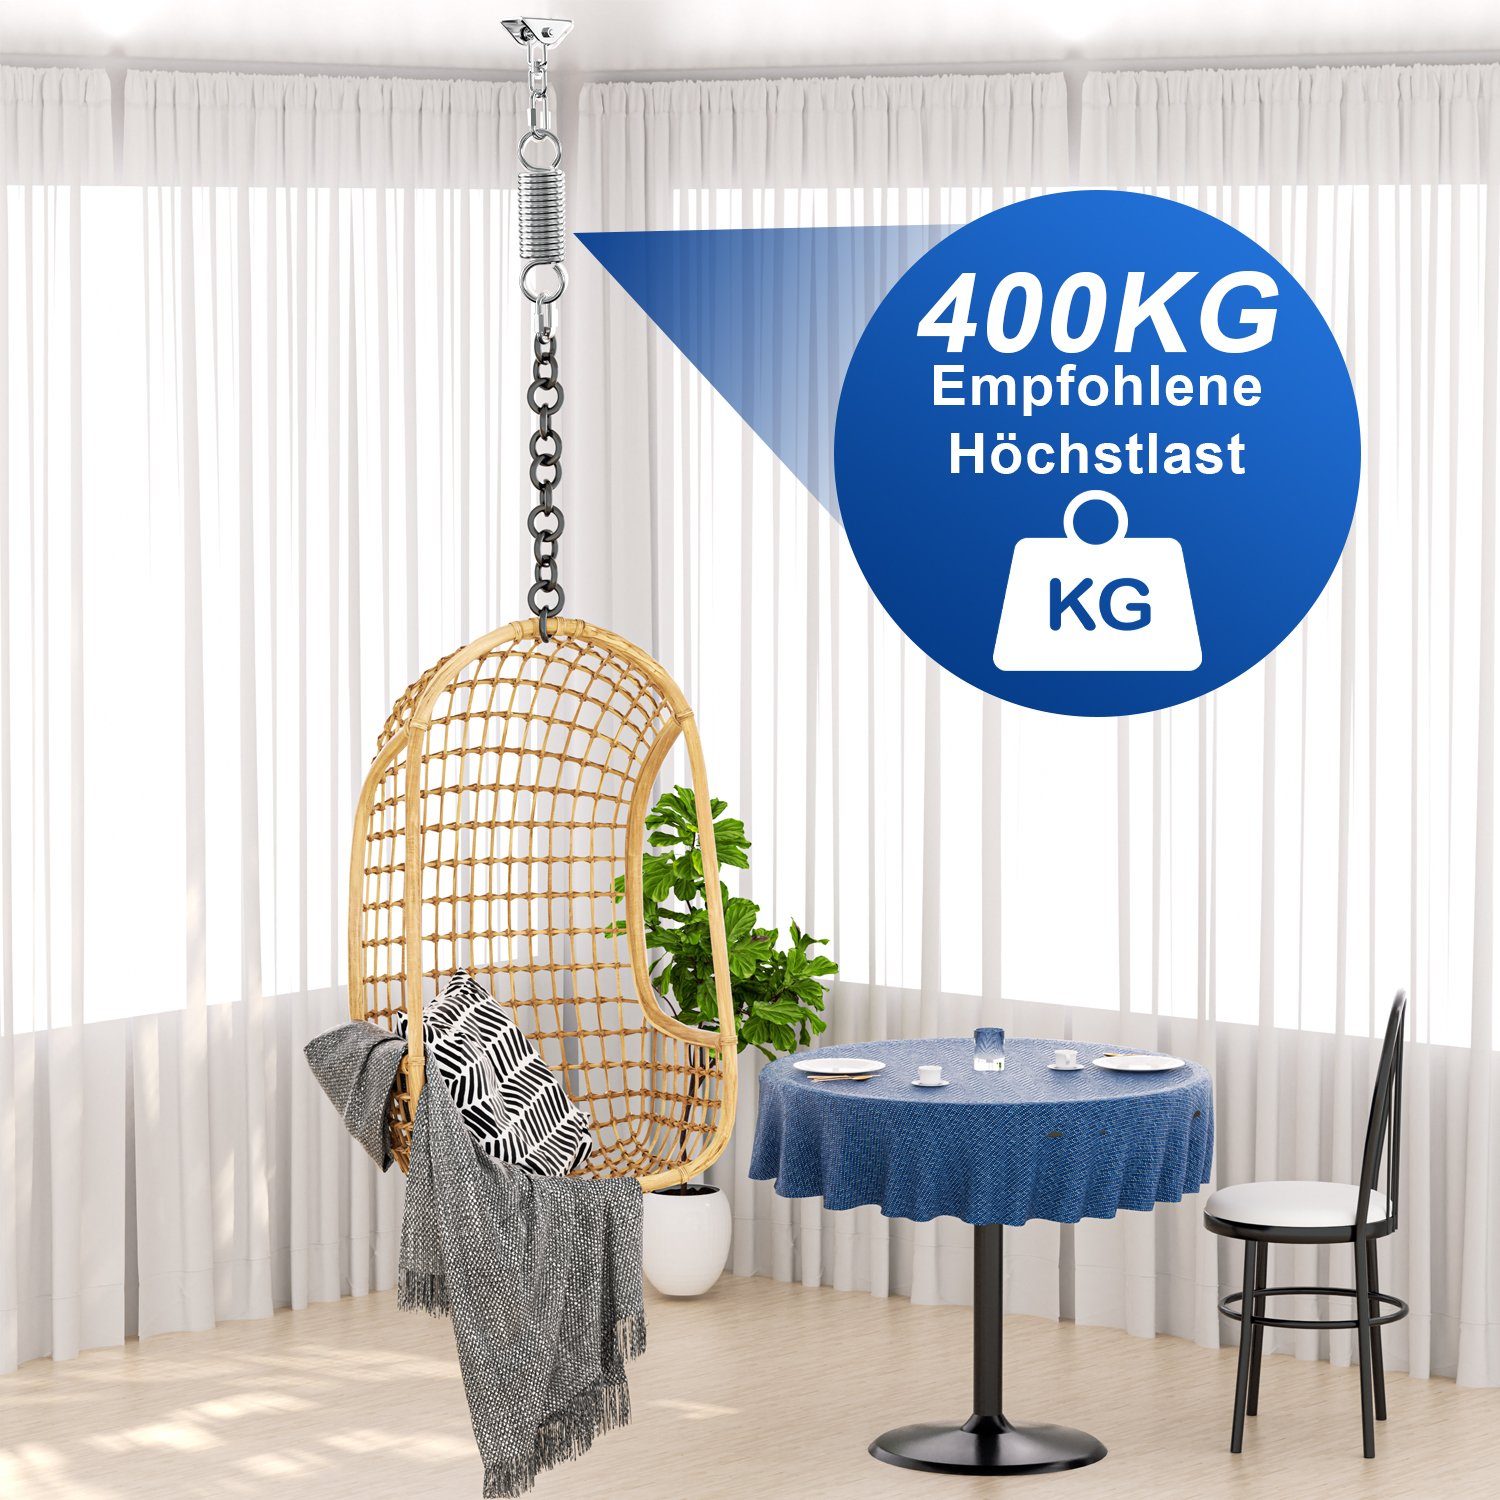 bis 360°Drehen Deckenhaken Schaukelhaken Edelstahl Deckenhalter 400KG, Lospitch Deckenhalter (1-St)